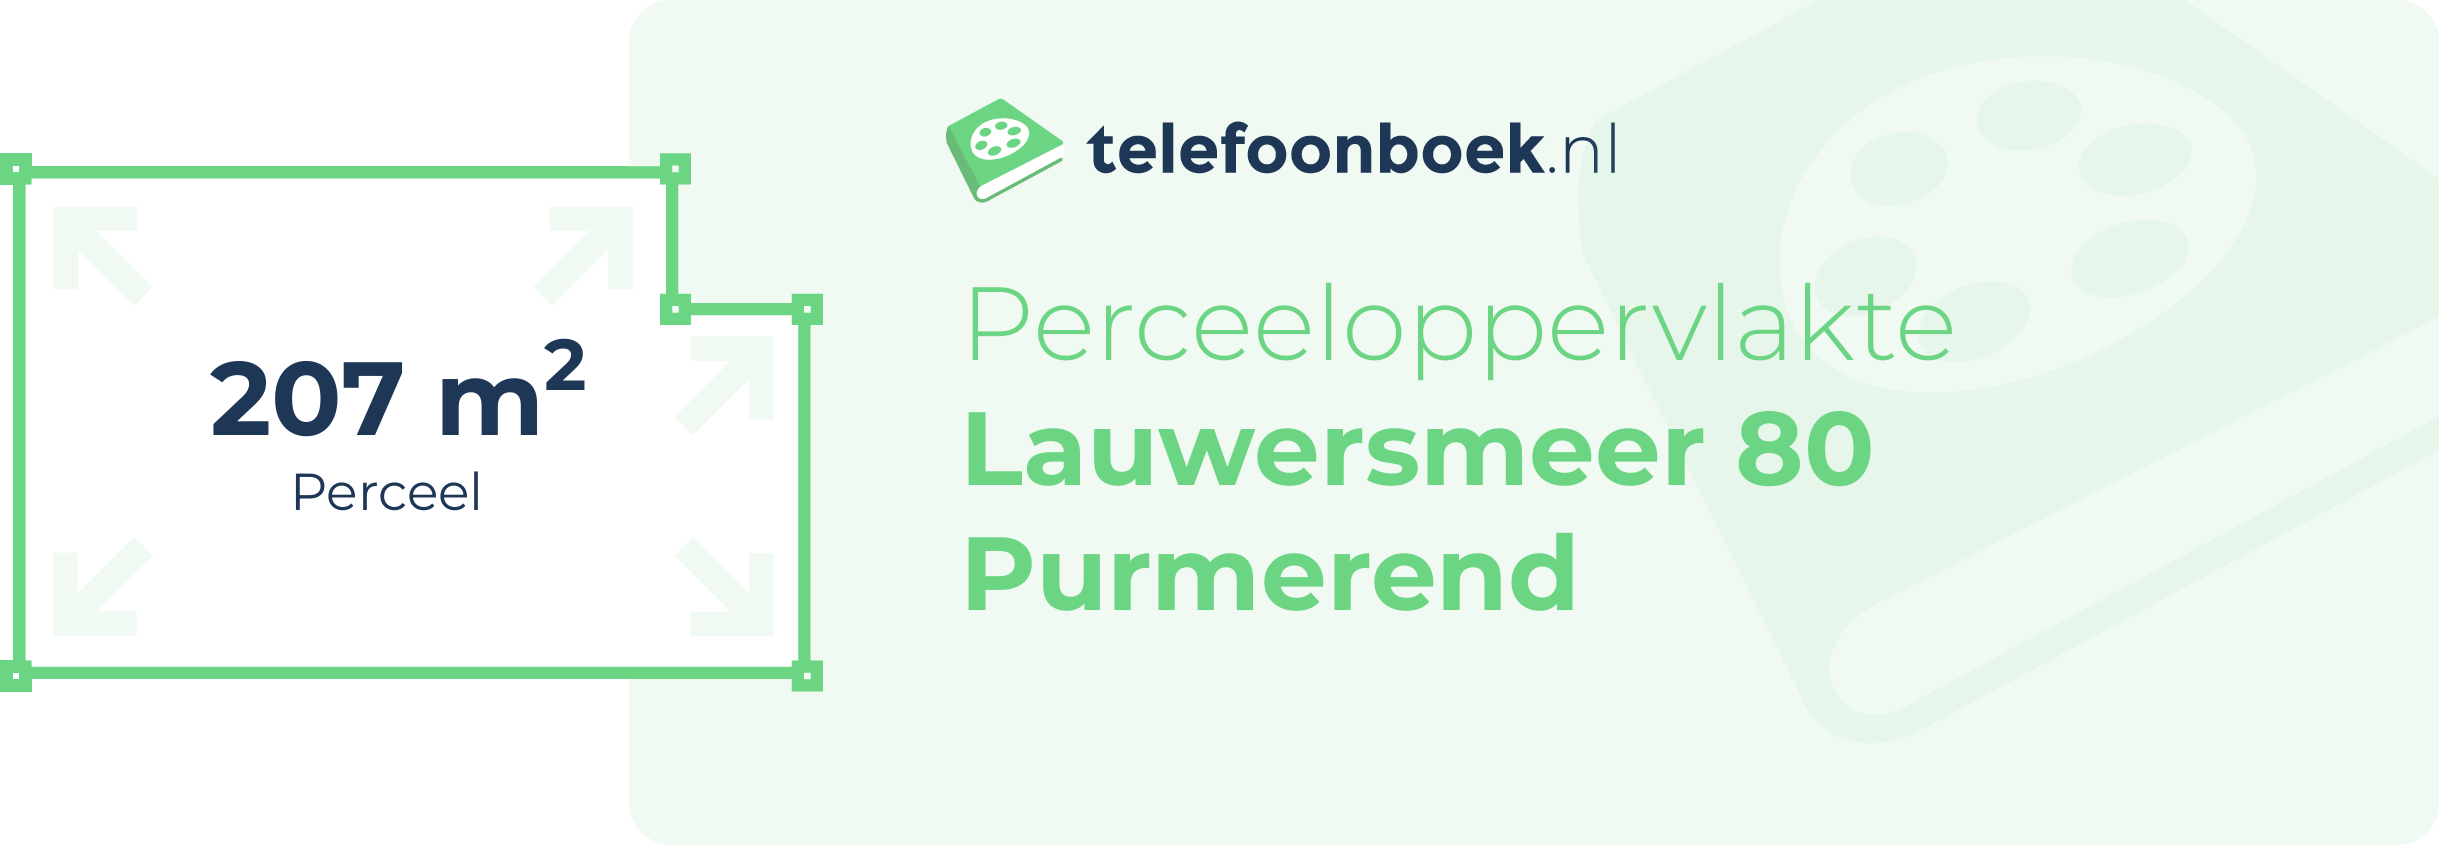 Perceeloppervlakte Lauwersmeer 80 Purmerend